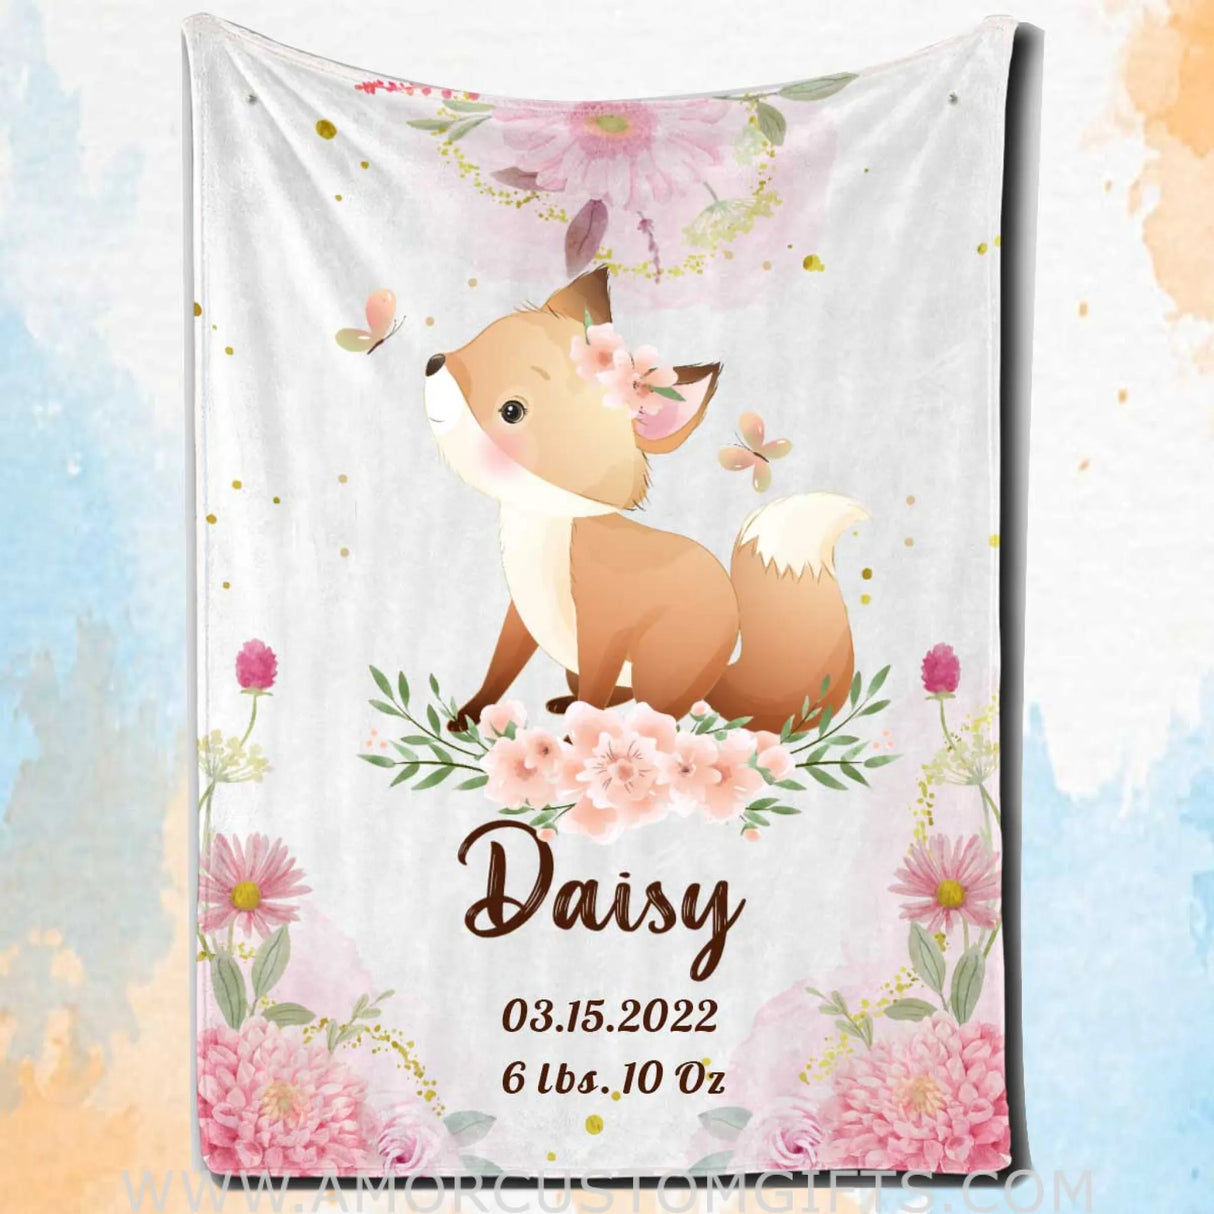 Blankets USA MADE Fox Blanket, Customized Baby Blanket for Little Girl, Gifts for Newborn Throw Blanket, Deer Blanket, Koala Blanket